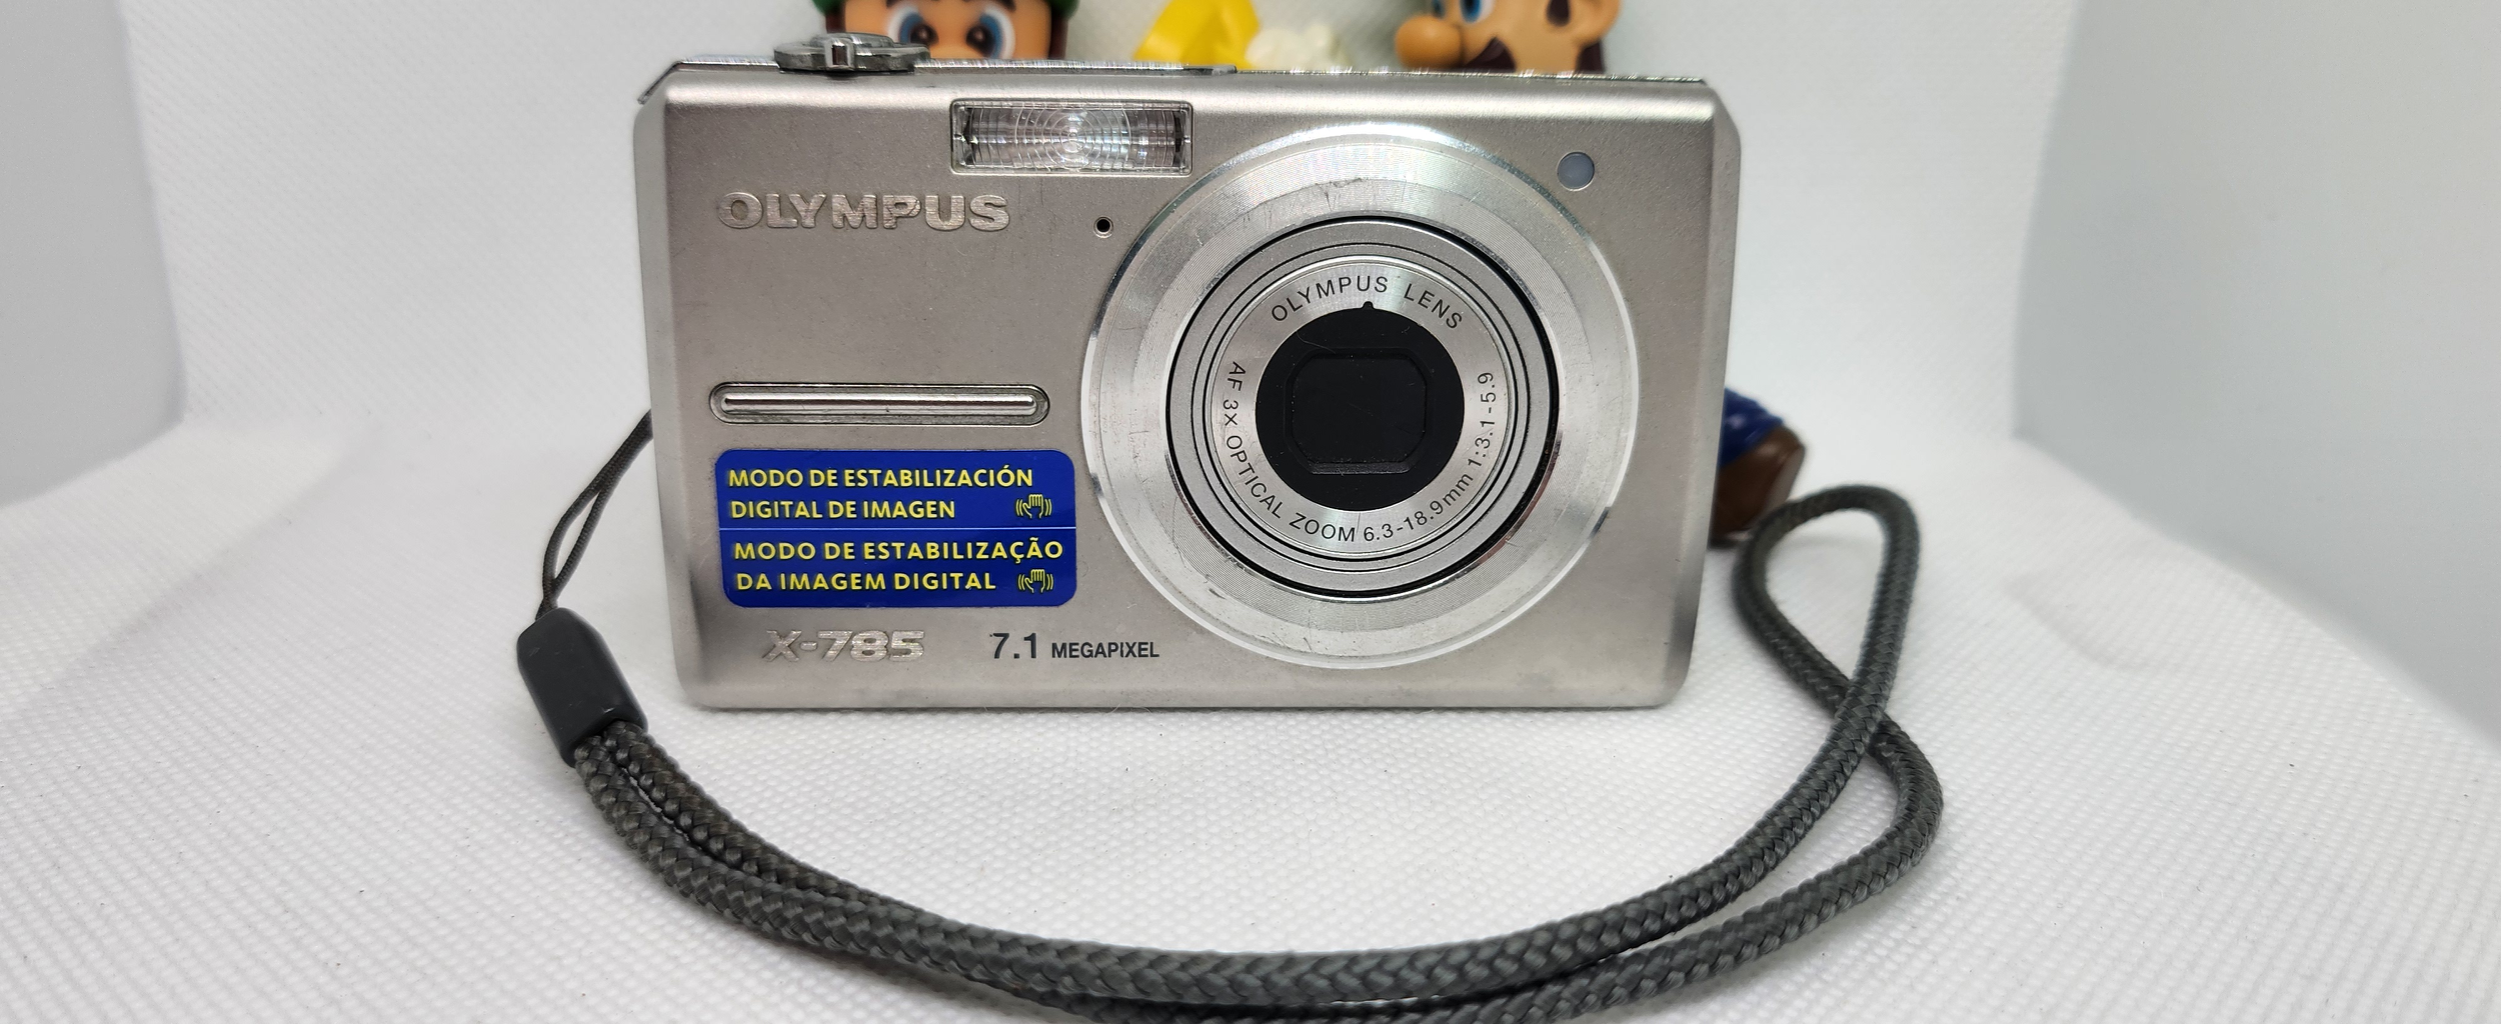 올림푸스 X-785 빈티지레트로 디카 디지털카메라